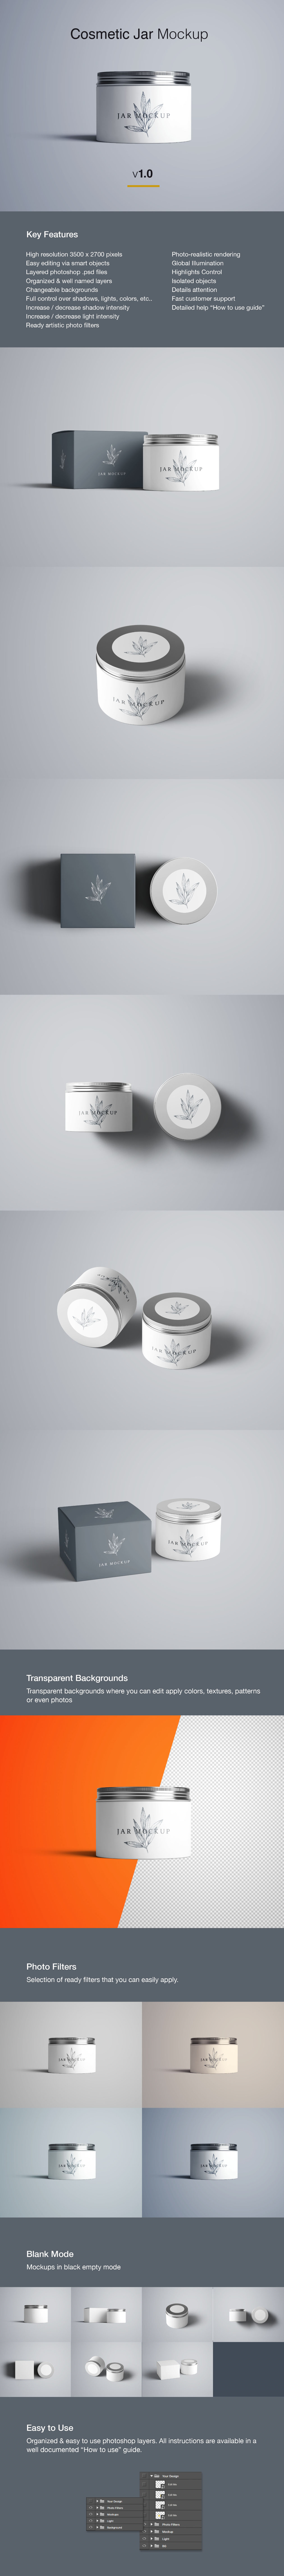 面霜化妆品包装设计效果图样机 Cosmetics Jar & Box Mockups – PSD插图